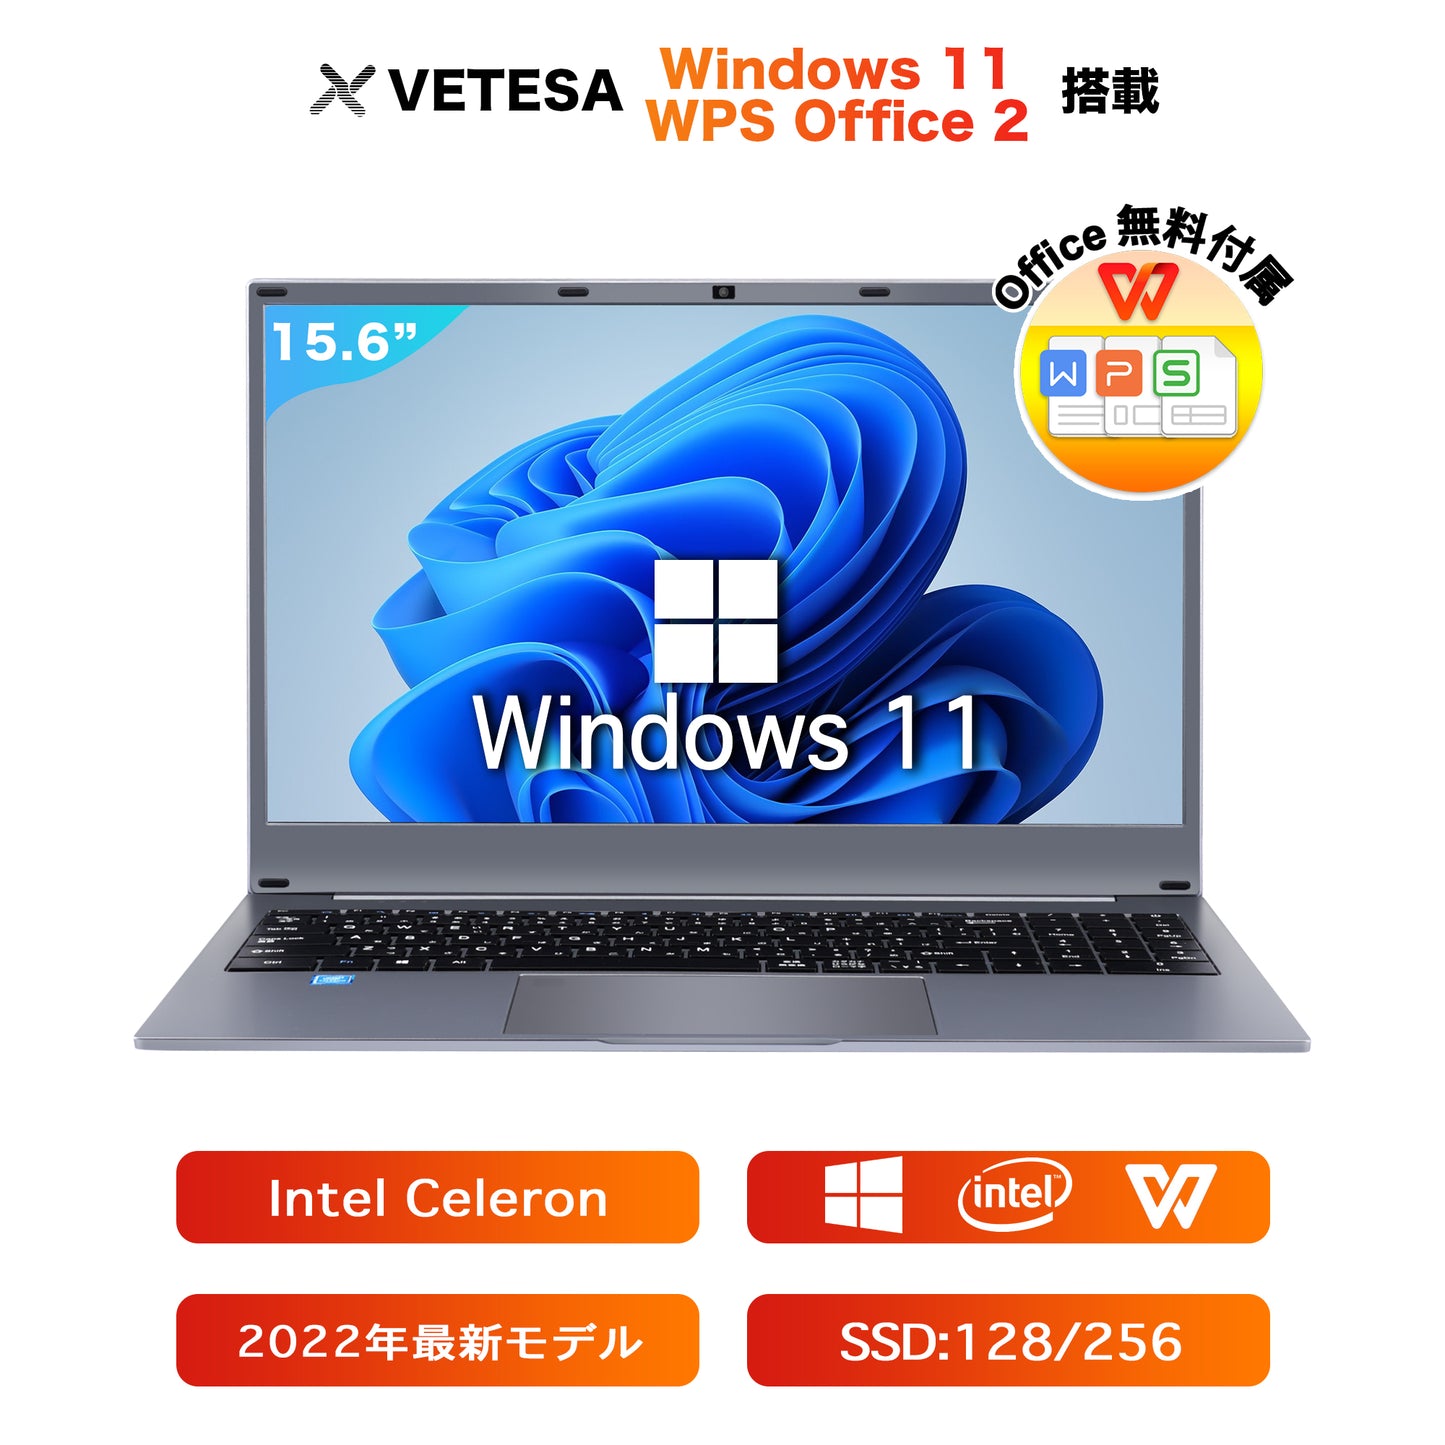 公式限定価格《VETESA 15.6型 新品ノートPC》Office付き Windows11 Celeron N4000 メモリ8GB SSD256GB テンキー付き